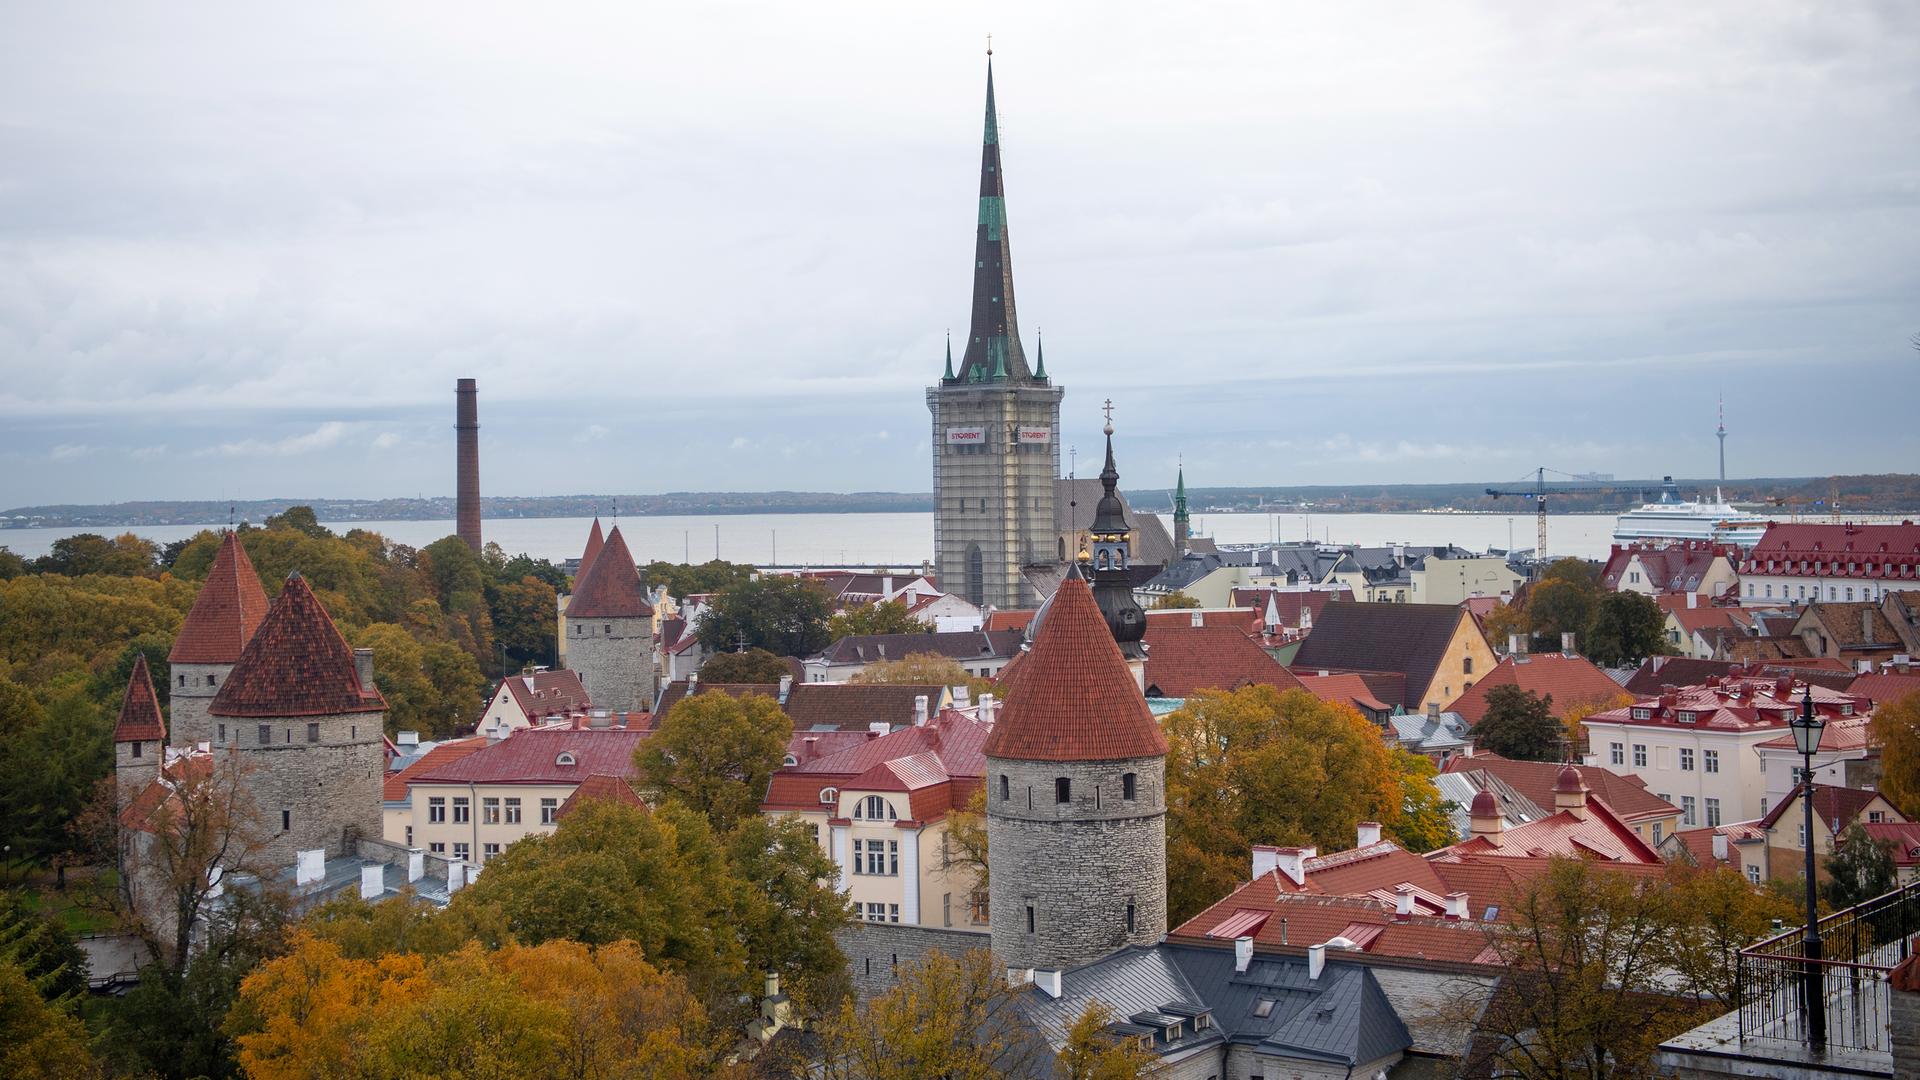 Blick auf die Altstadt von Tallinn mit der mittelalterlichen Stadtmauer und dem Turm der Olaikirche (M), aufgenommen vom Stenbock House.